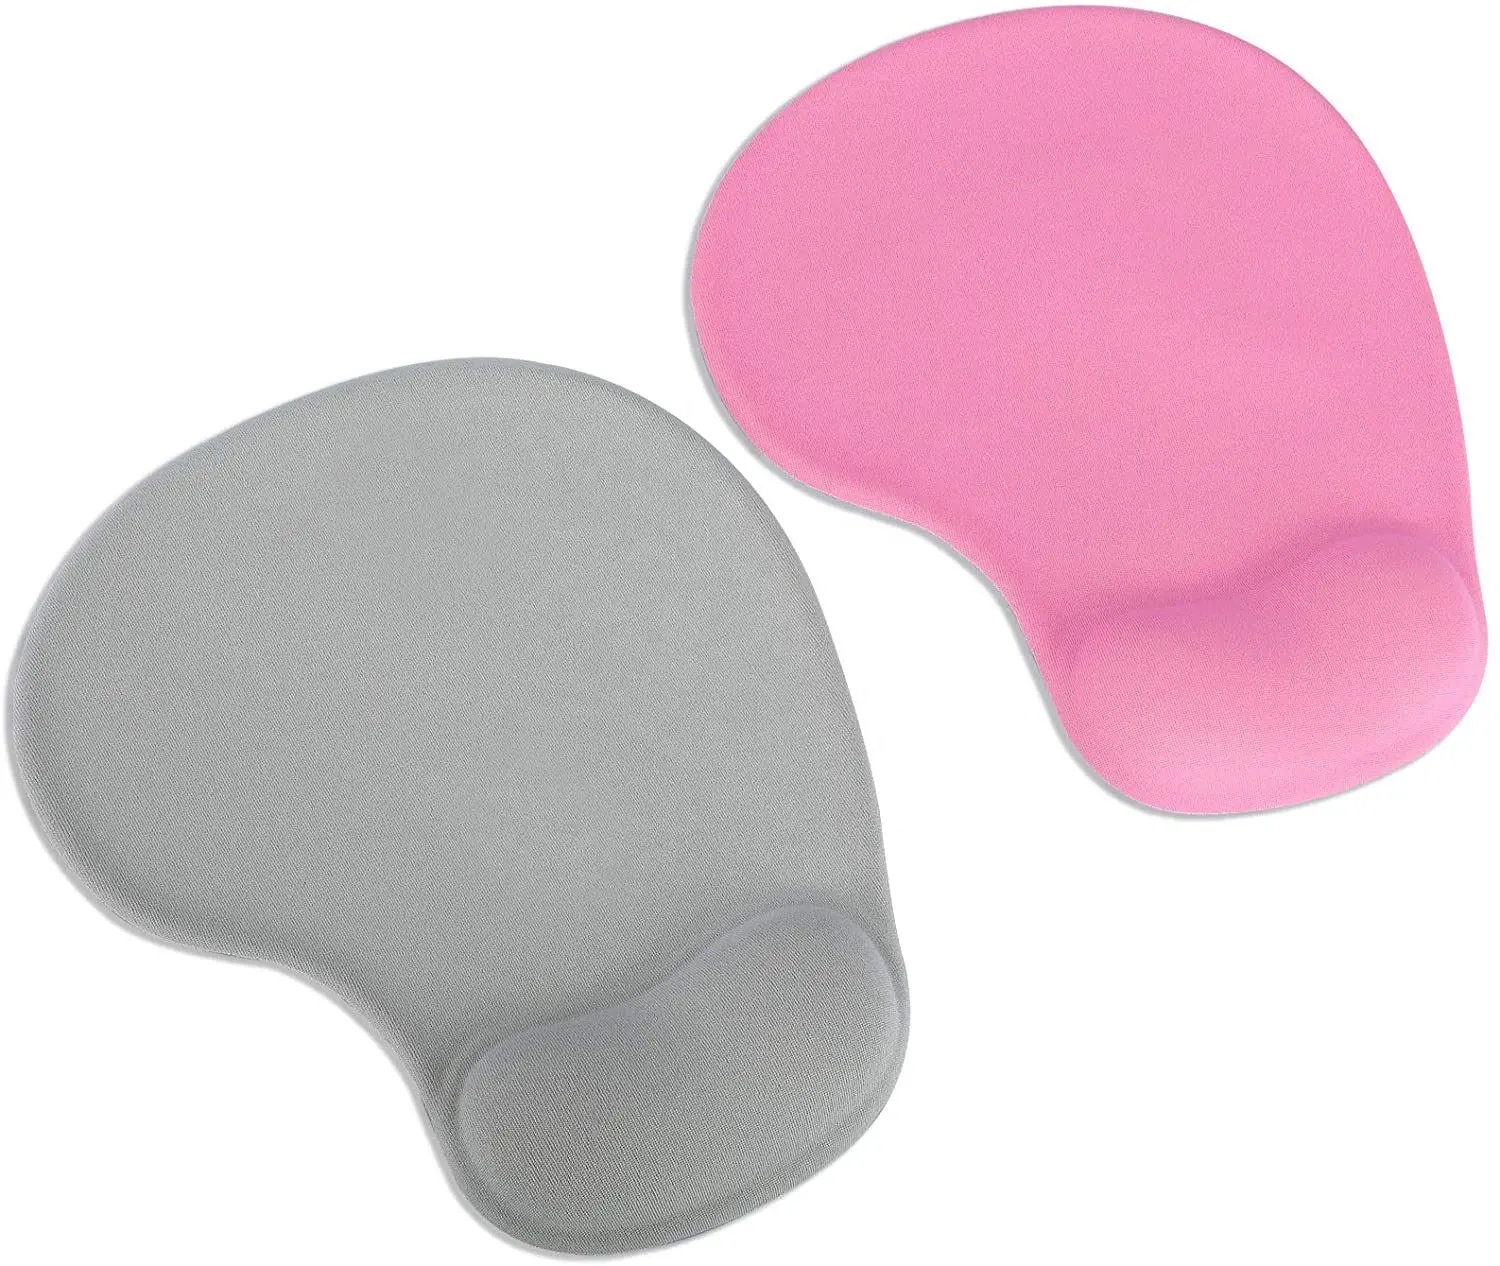 Mousepad promozionale con stampa ergonomica con supporto per il polso proteggi i polsi gel poggiapolsi mouse pad